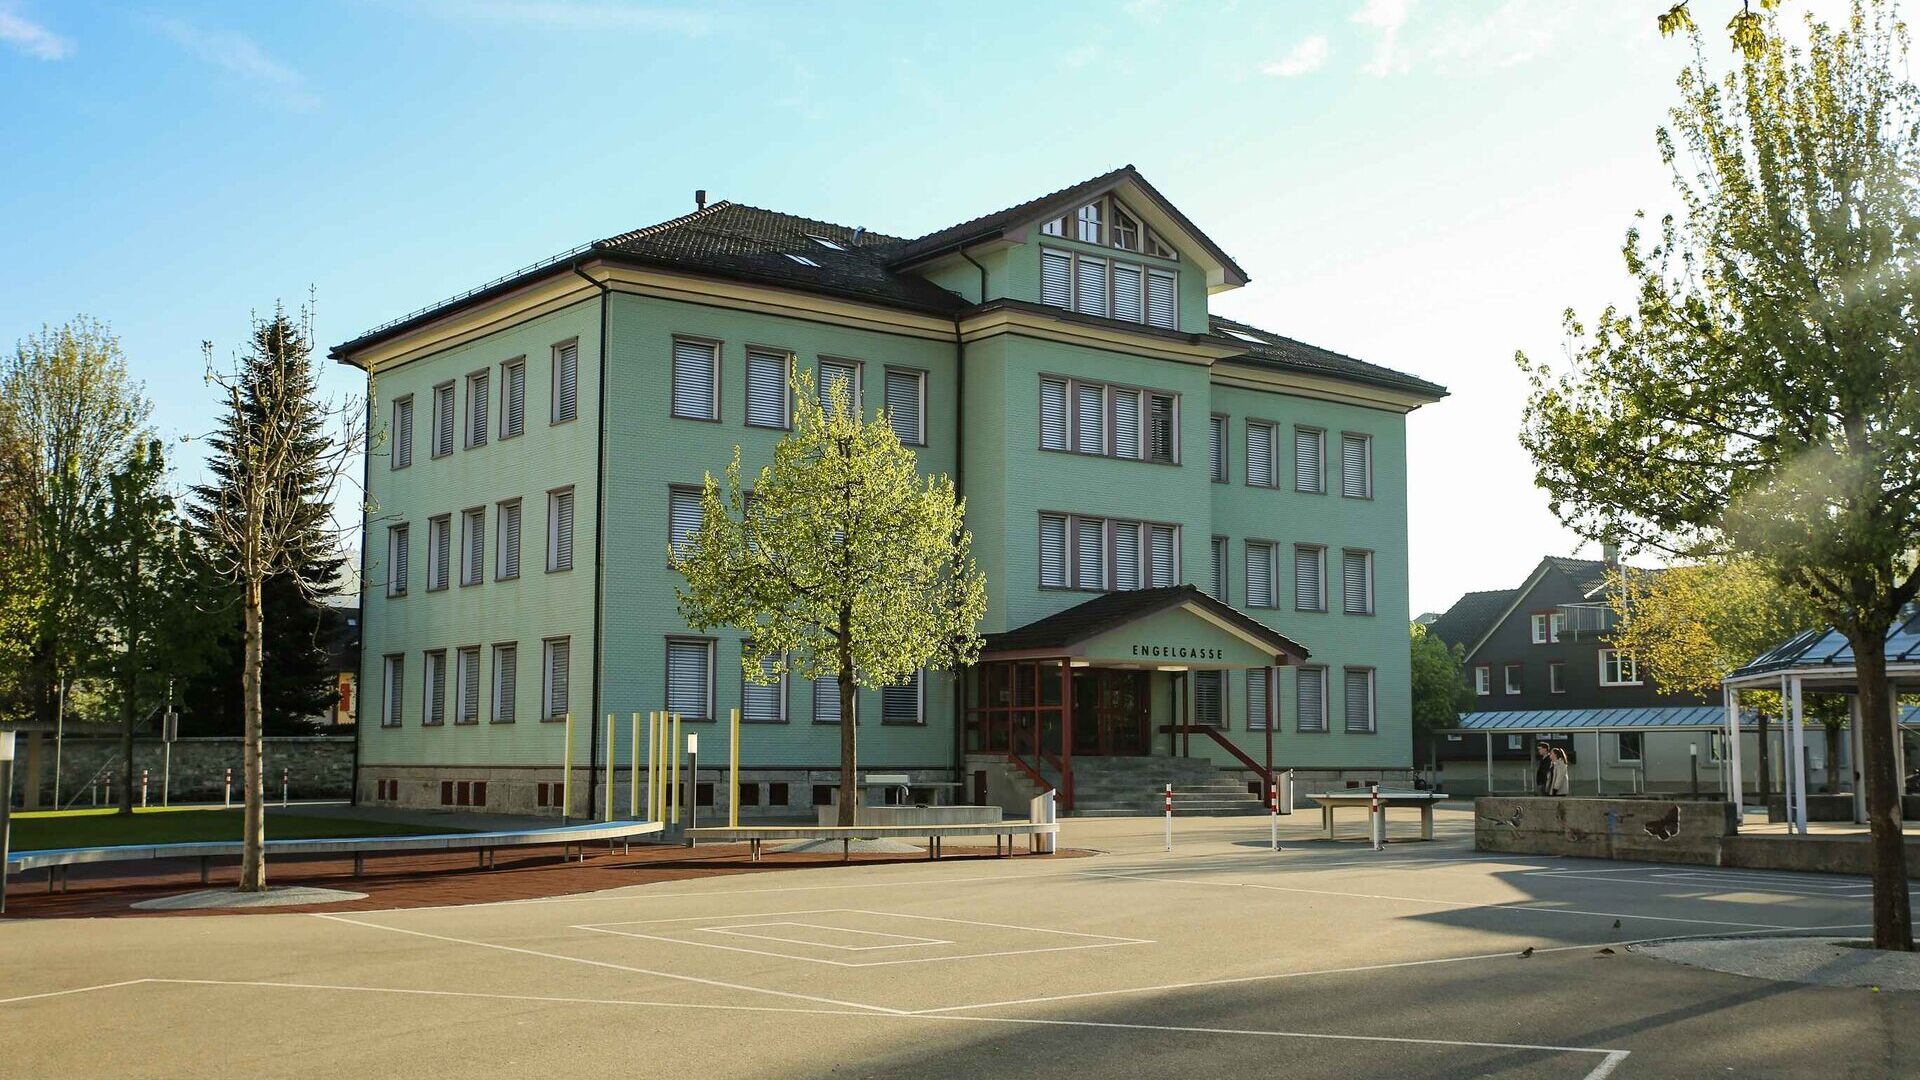 Il sistema educativo in Appenzell: la scuola elementare o primaria Hofwies 2 di Appenzello